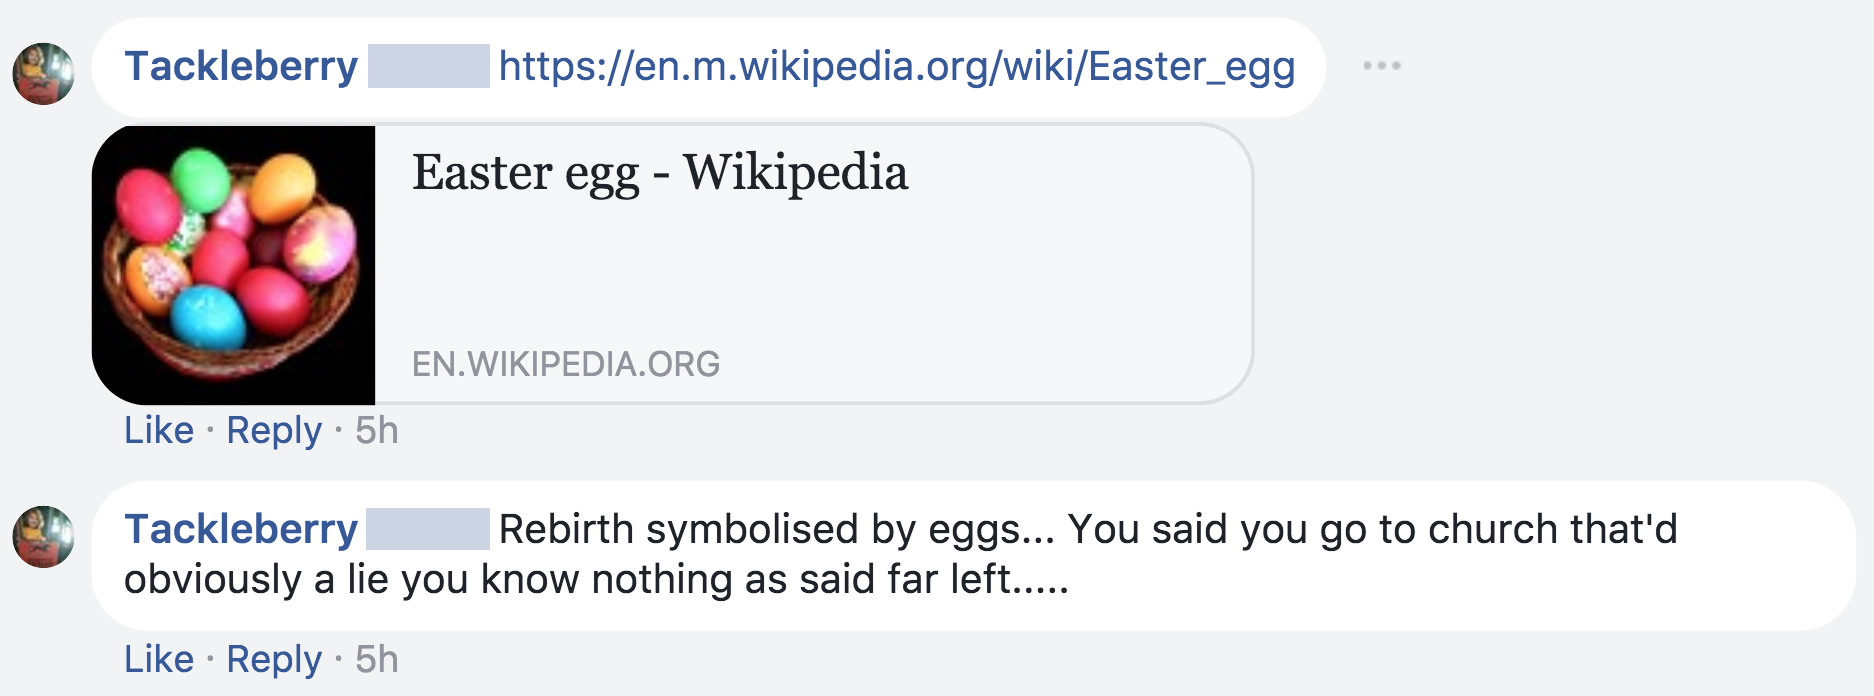 Easter egg - Wikipedia